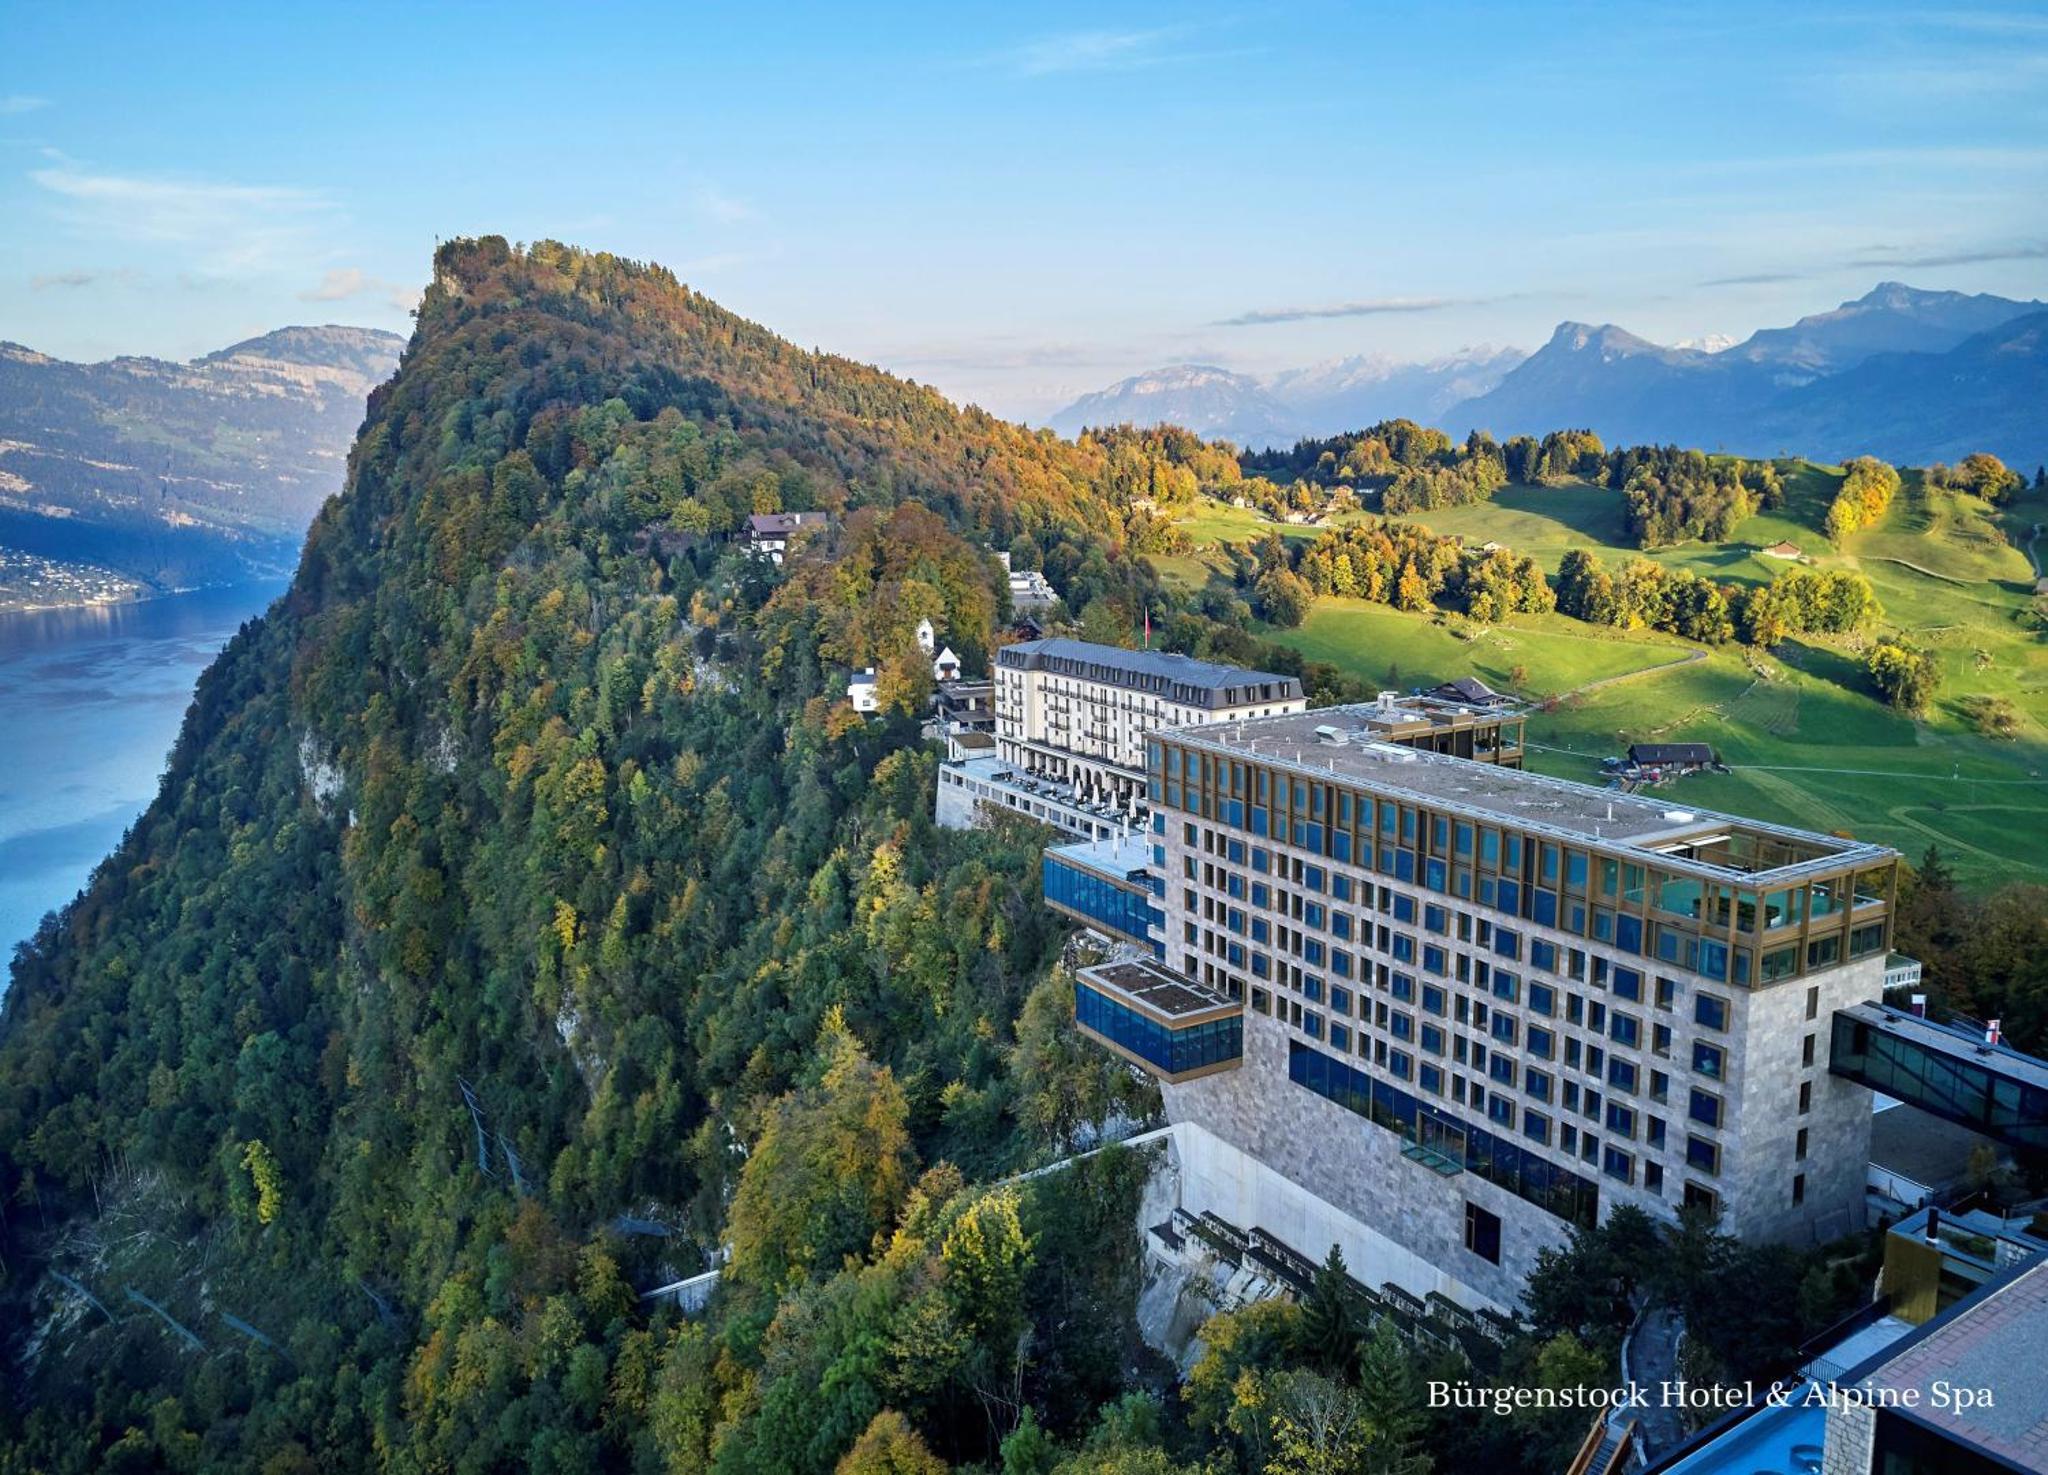 Bürgenstock Hotel & Alpine Spa Lake Lucerne